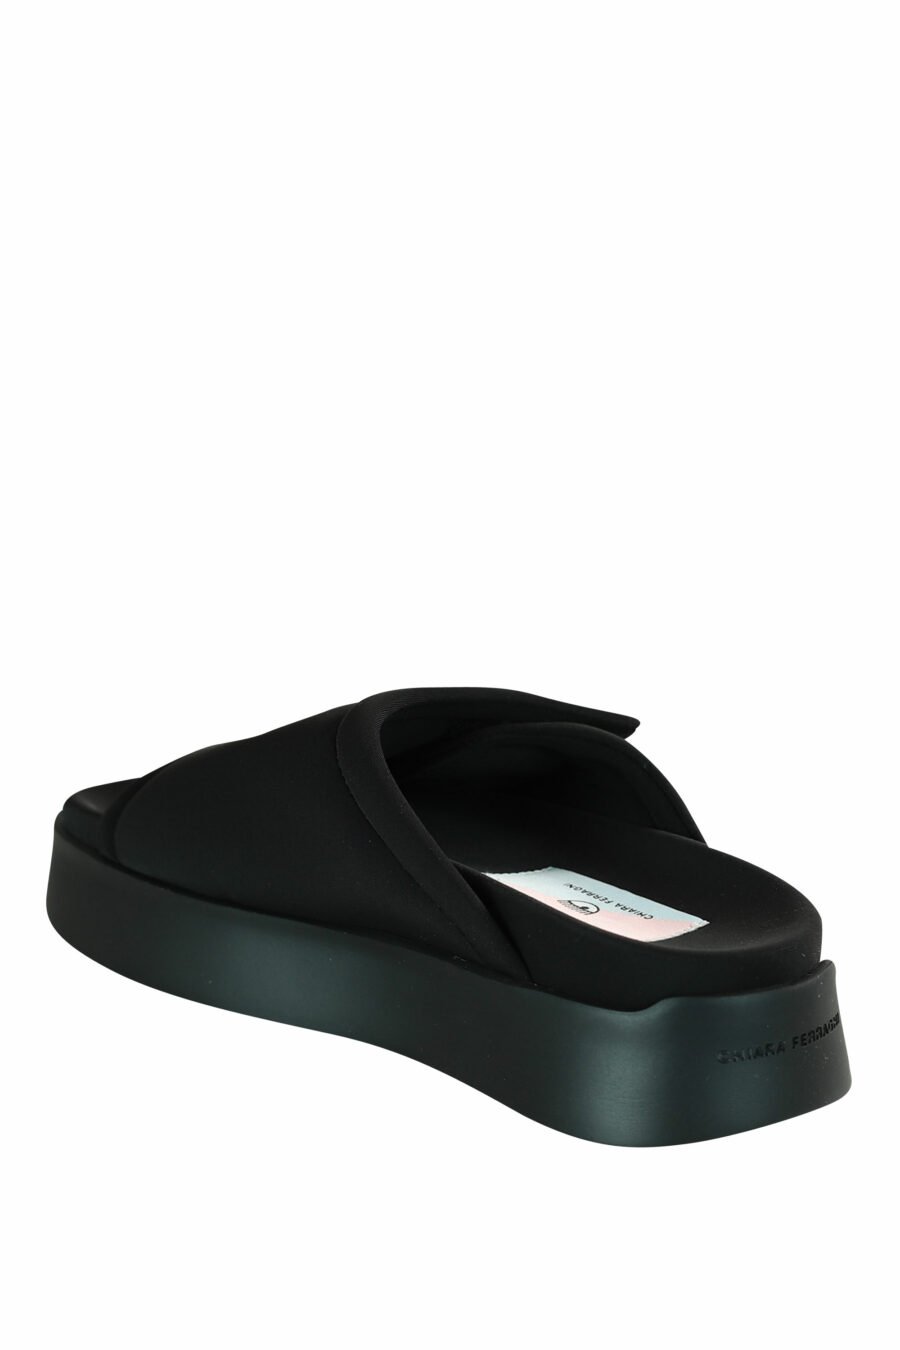 Sandales noires avec velcro et plateforme noire - 8059482630771 4